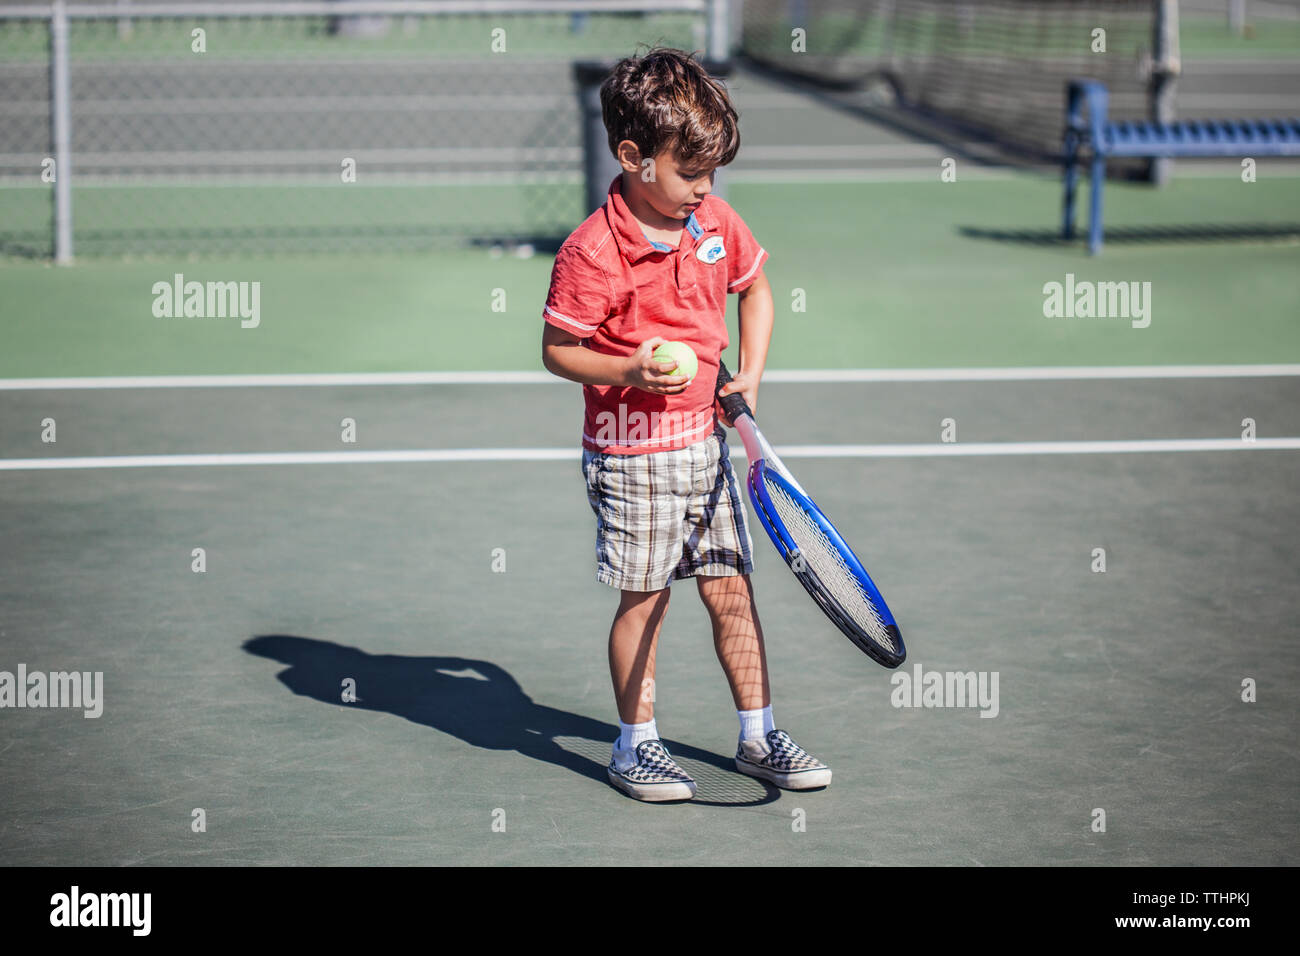 Ragazzo holding racchetta da tennis e la sfera mentre permanente sulla corte Foto Stock